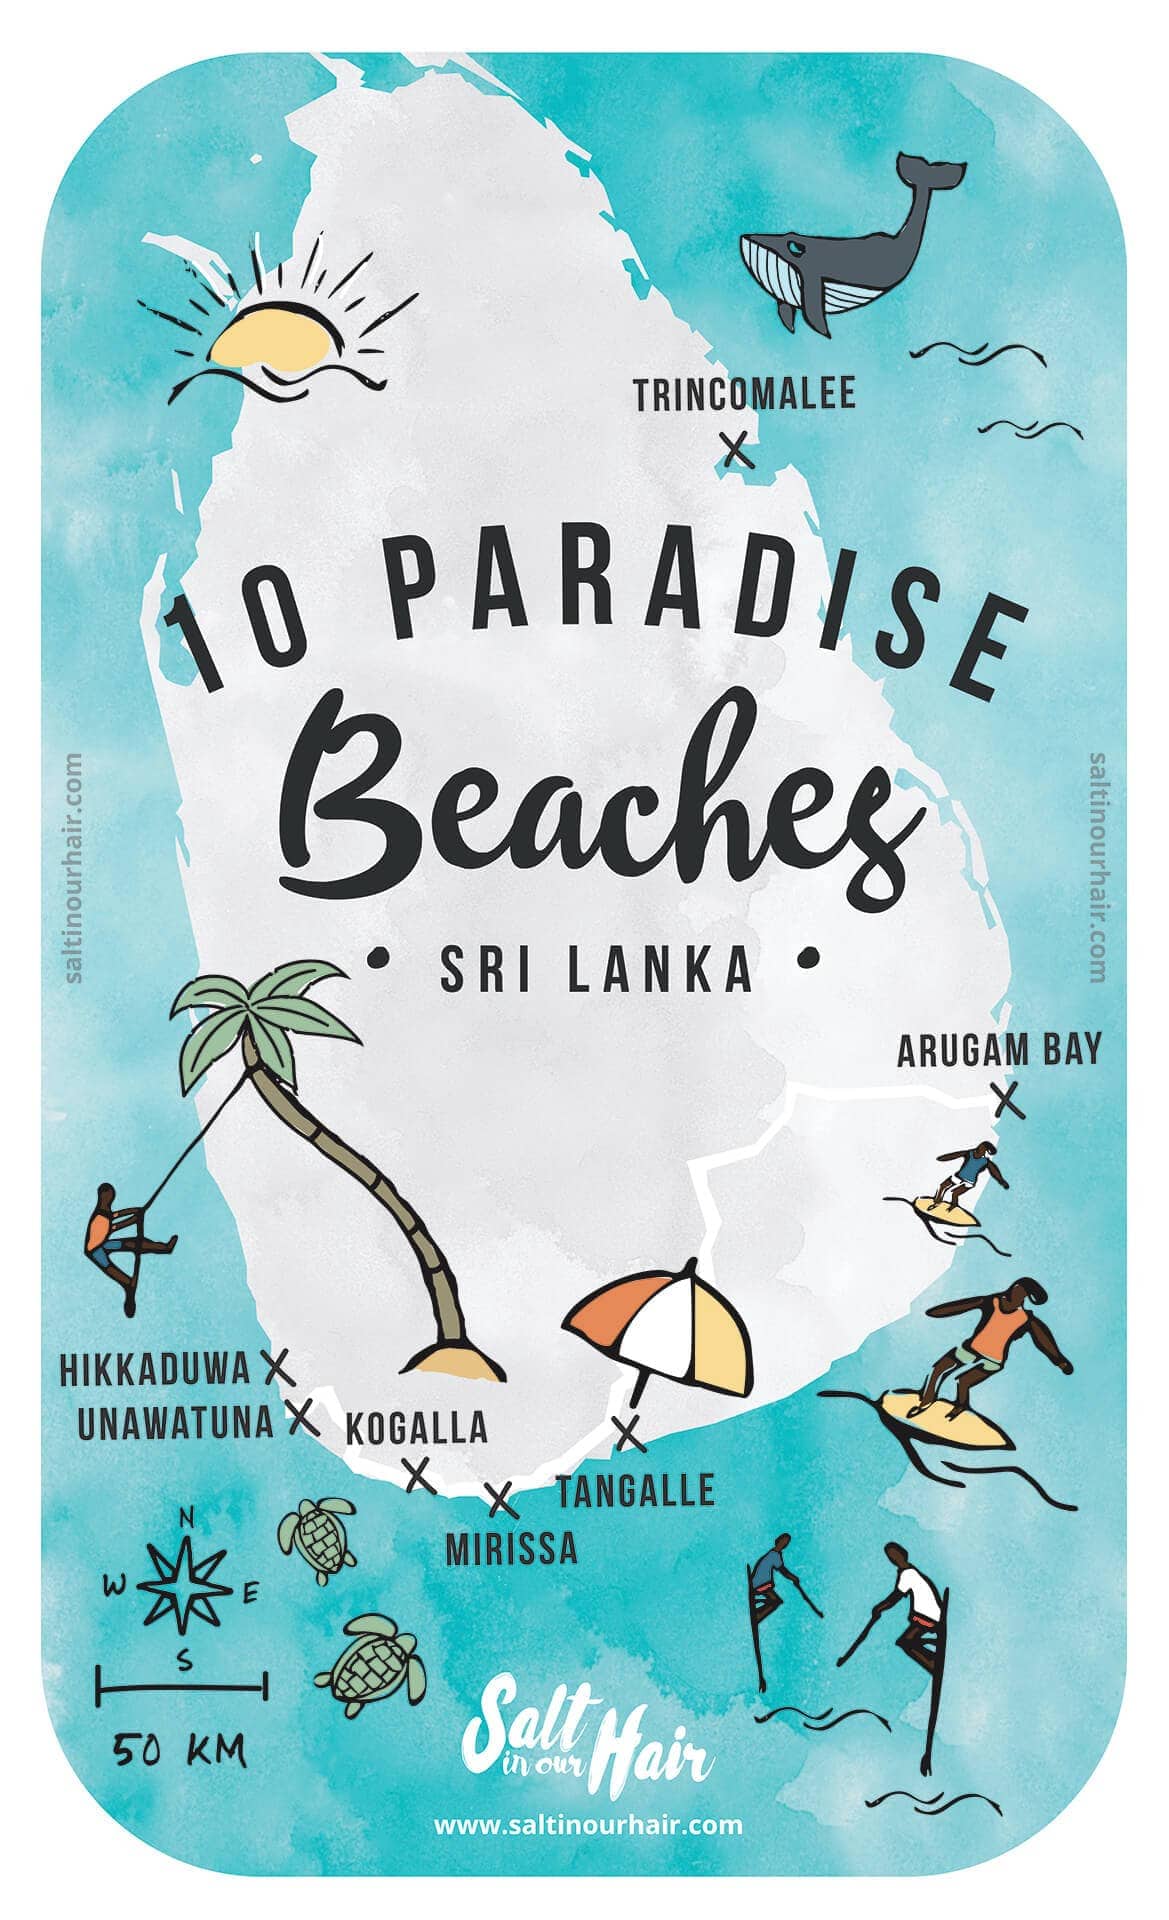 Sri lanka beaches map